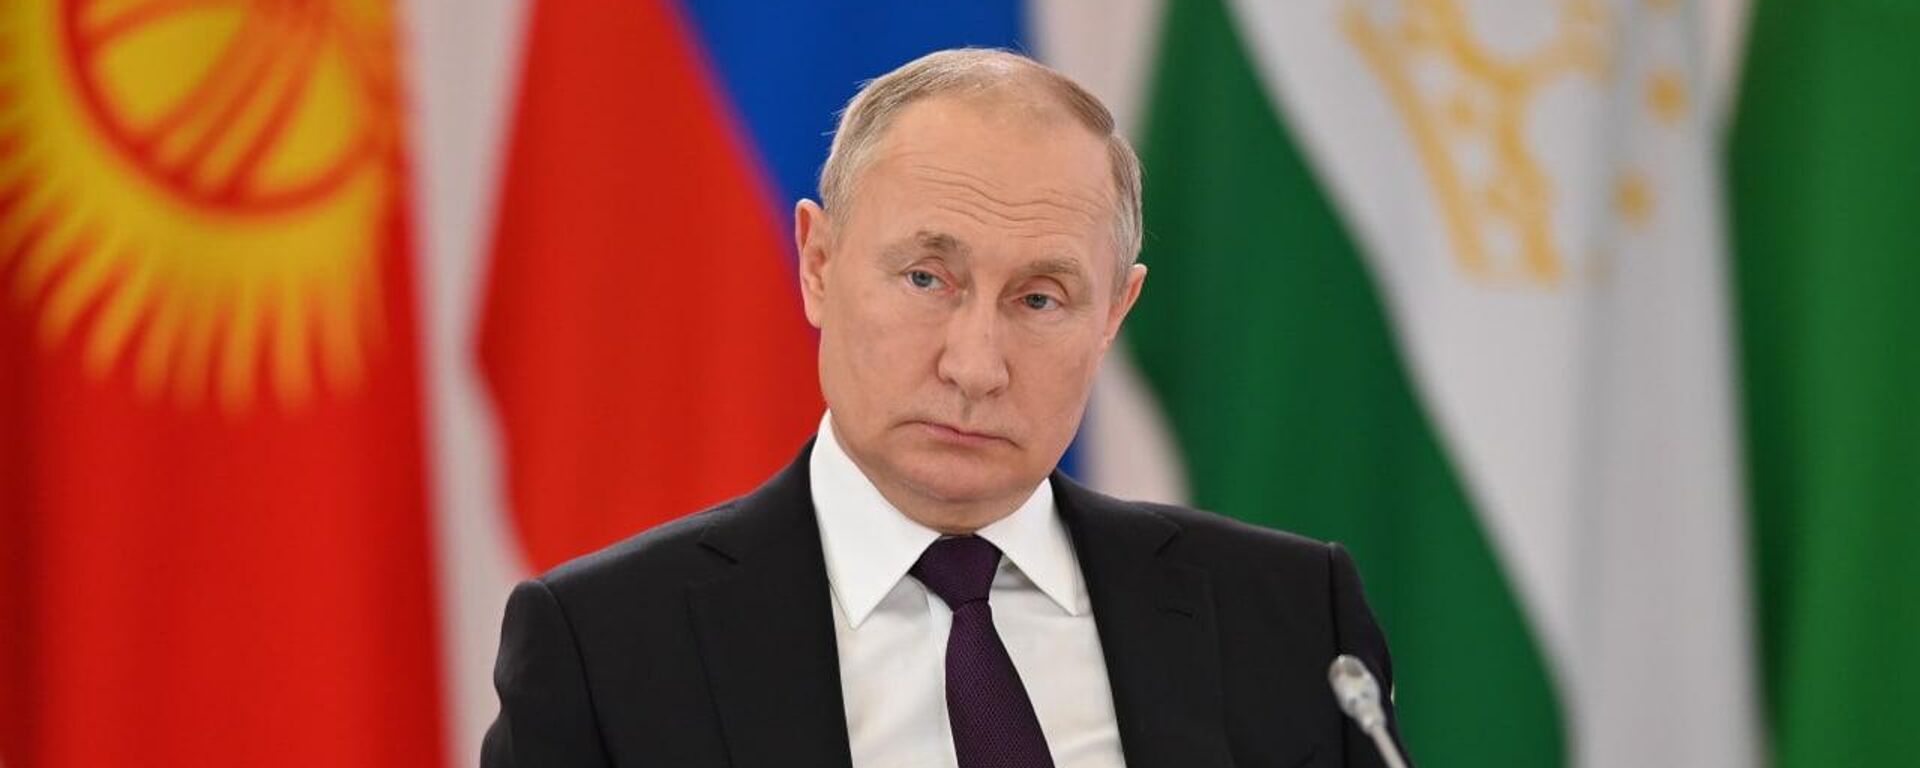 Владимир Путин на саммите глав государств СНГ в Астане, 14 октября 2022 года - Sputnik Казахстан, 1920, 14.10.2022